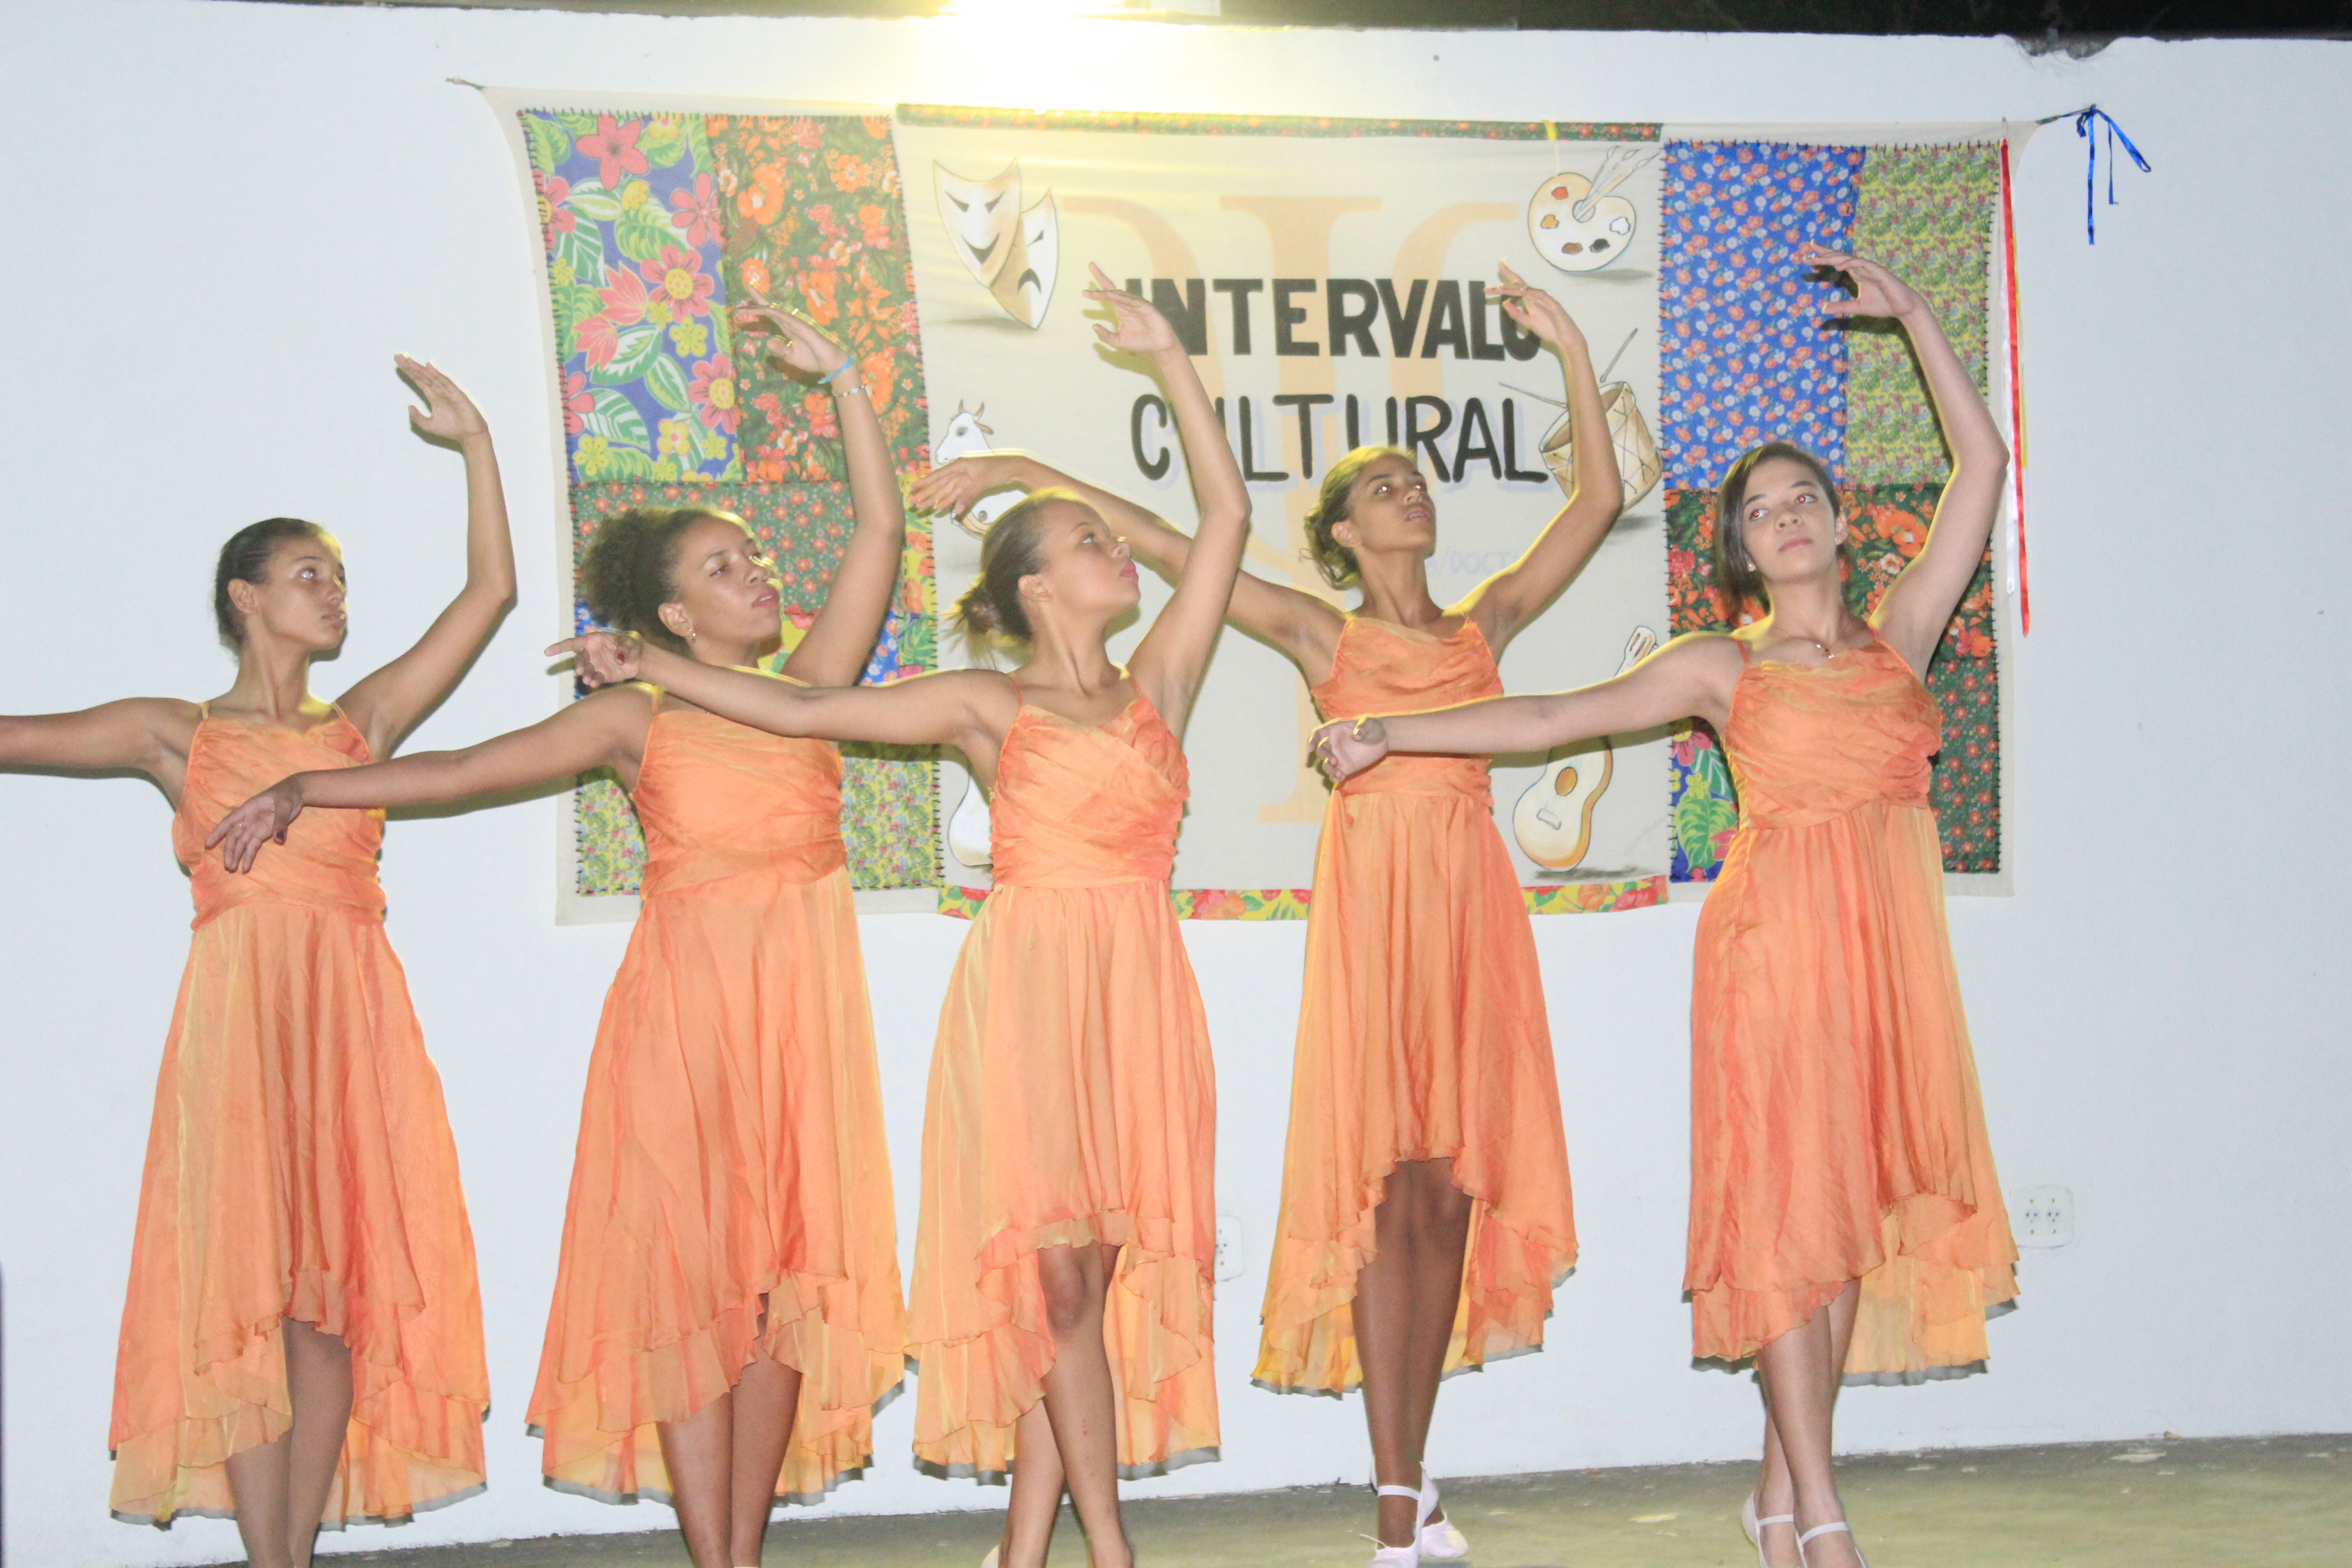 Espetáculo de Dança agita o último intervalo cultural do primeiro semestre